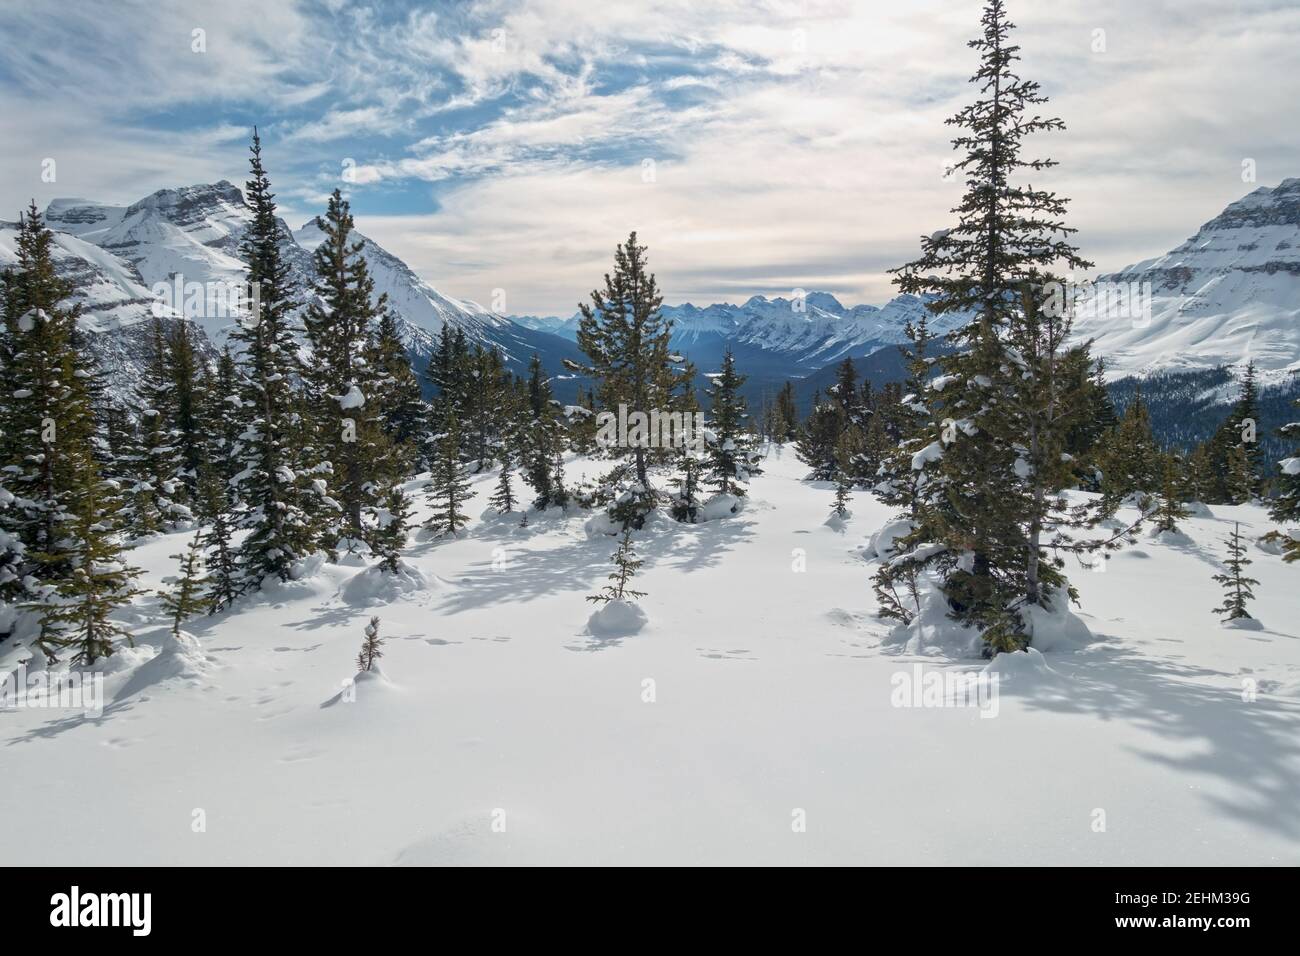 Subalpine Wald und Snowy Meadow mit entfernten Rocky Mountain Peaks Landschaft. Winter Schneeschuhwandern Skitour im Banff National Park, Canadian Rockies Stockfoto